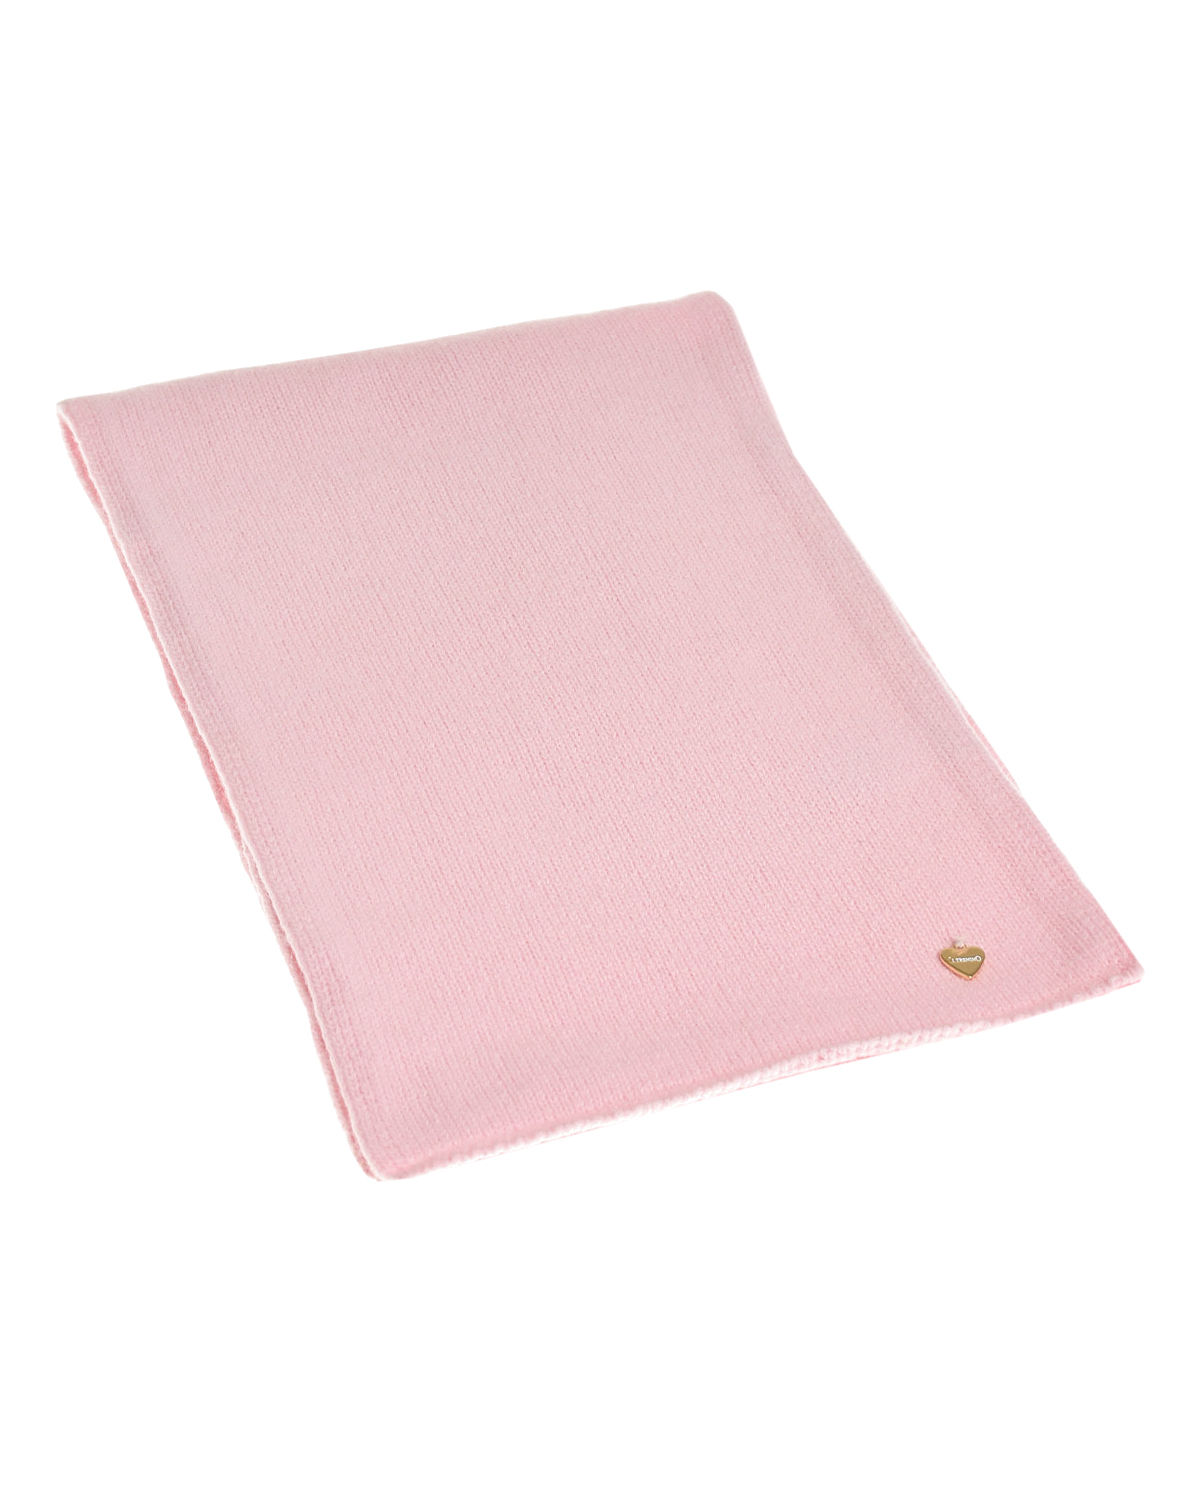 Розовый шарф из шерсти и кашемира Il Trenino детский, размер unica